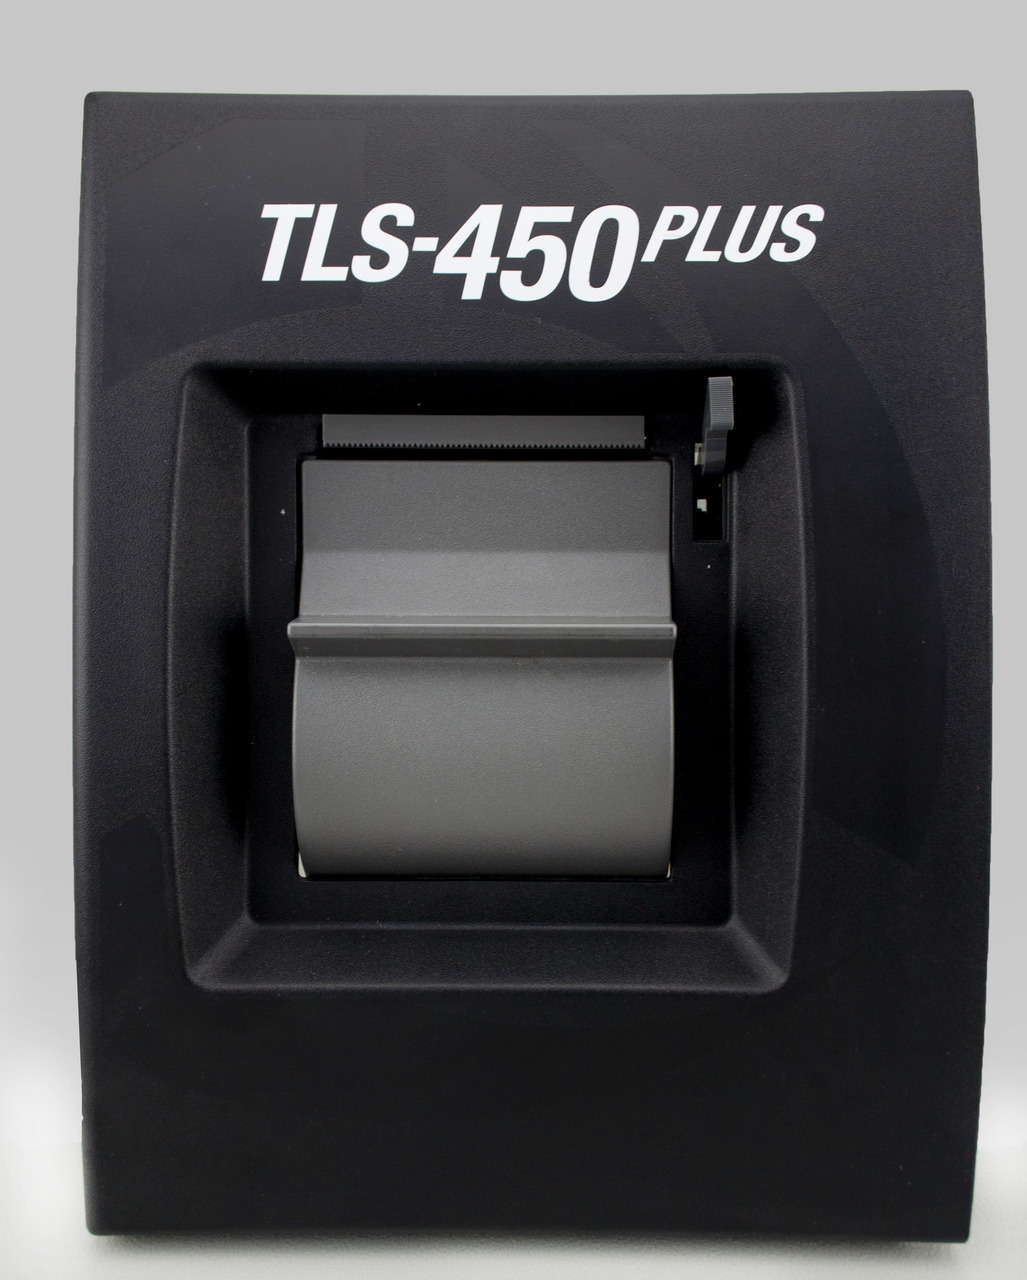 TLS-450 PLUS PRINTER - BLACK DOOR, Fits Veeder Root